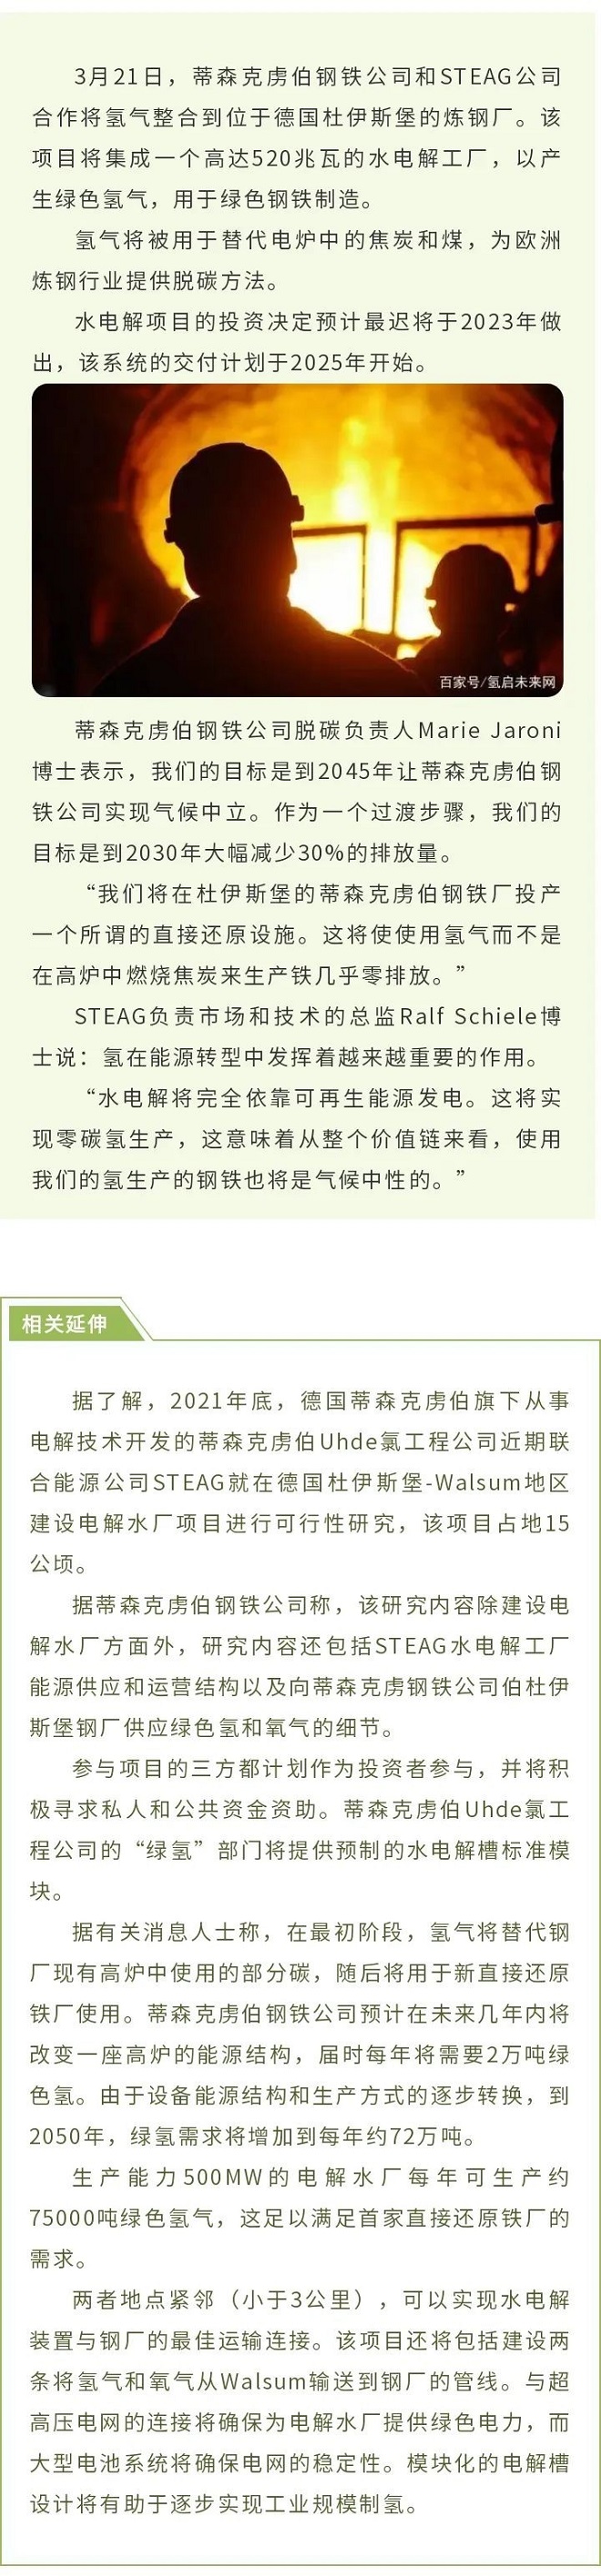 蒂森克虏伯钢铁公司携手STEAG制氢，计划2025年开始交付